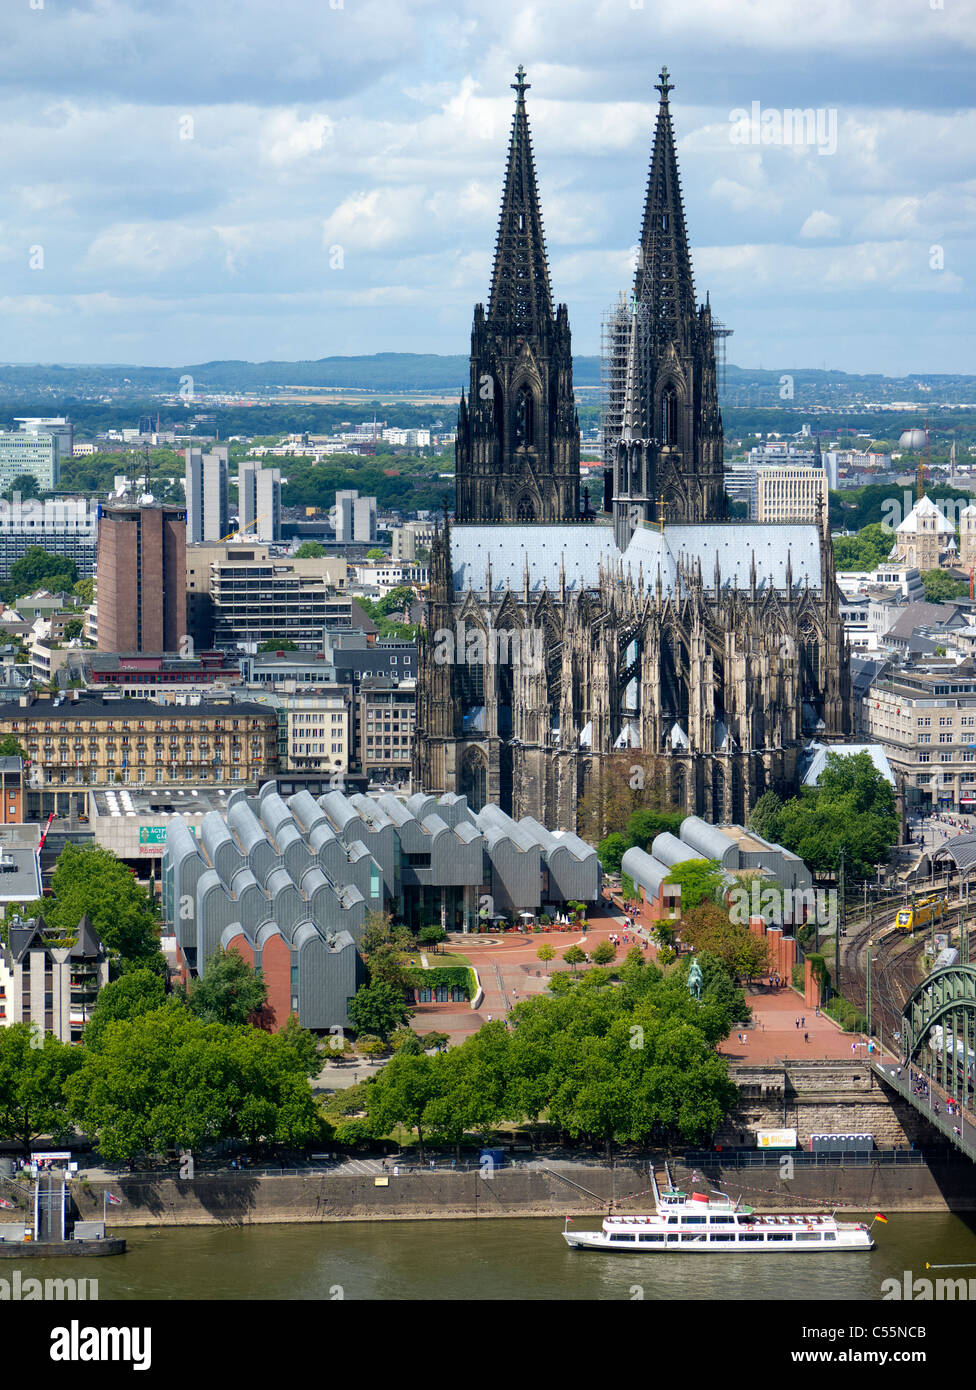 Vue extérieure du Musée Ludwig et le Dom ou la cathédrale de Cologne Allemagne Banque D'Images